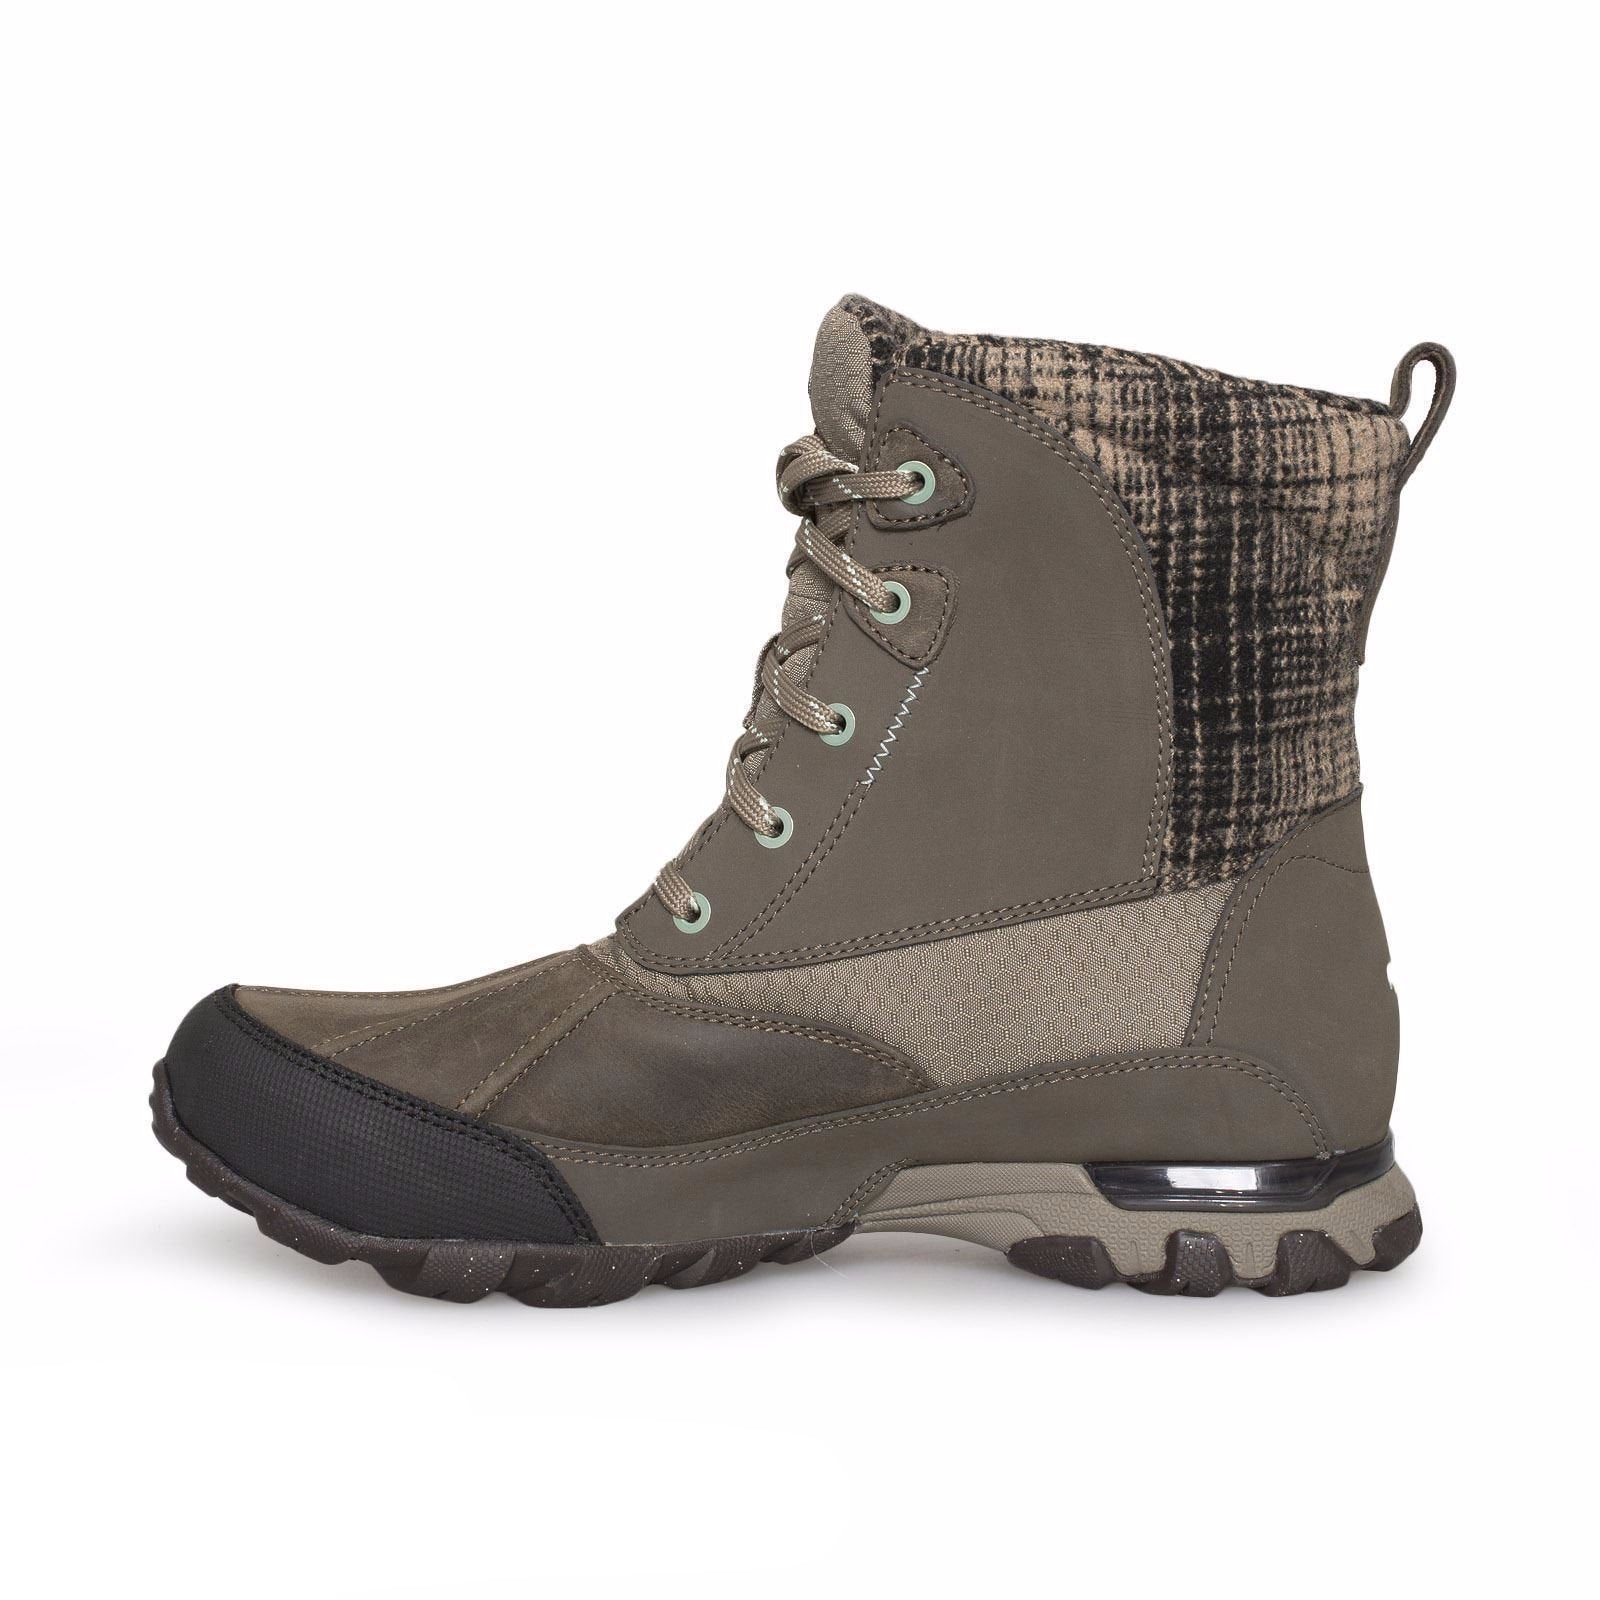 ahnu sugar peak insulated wp hiking boots